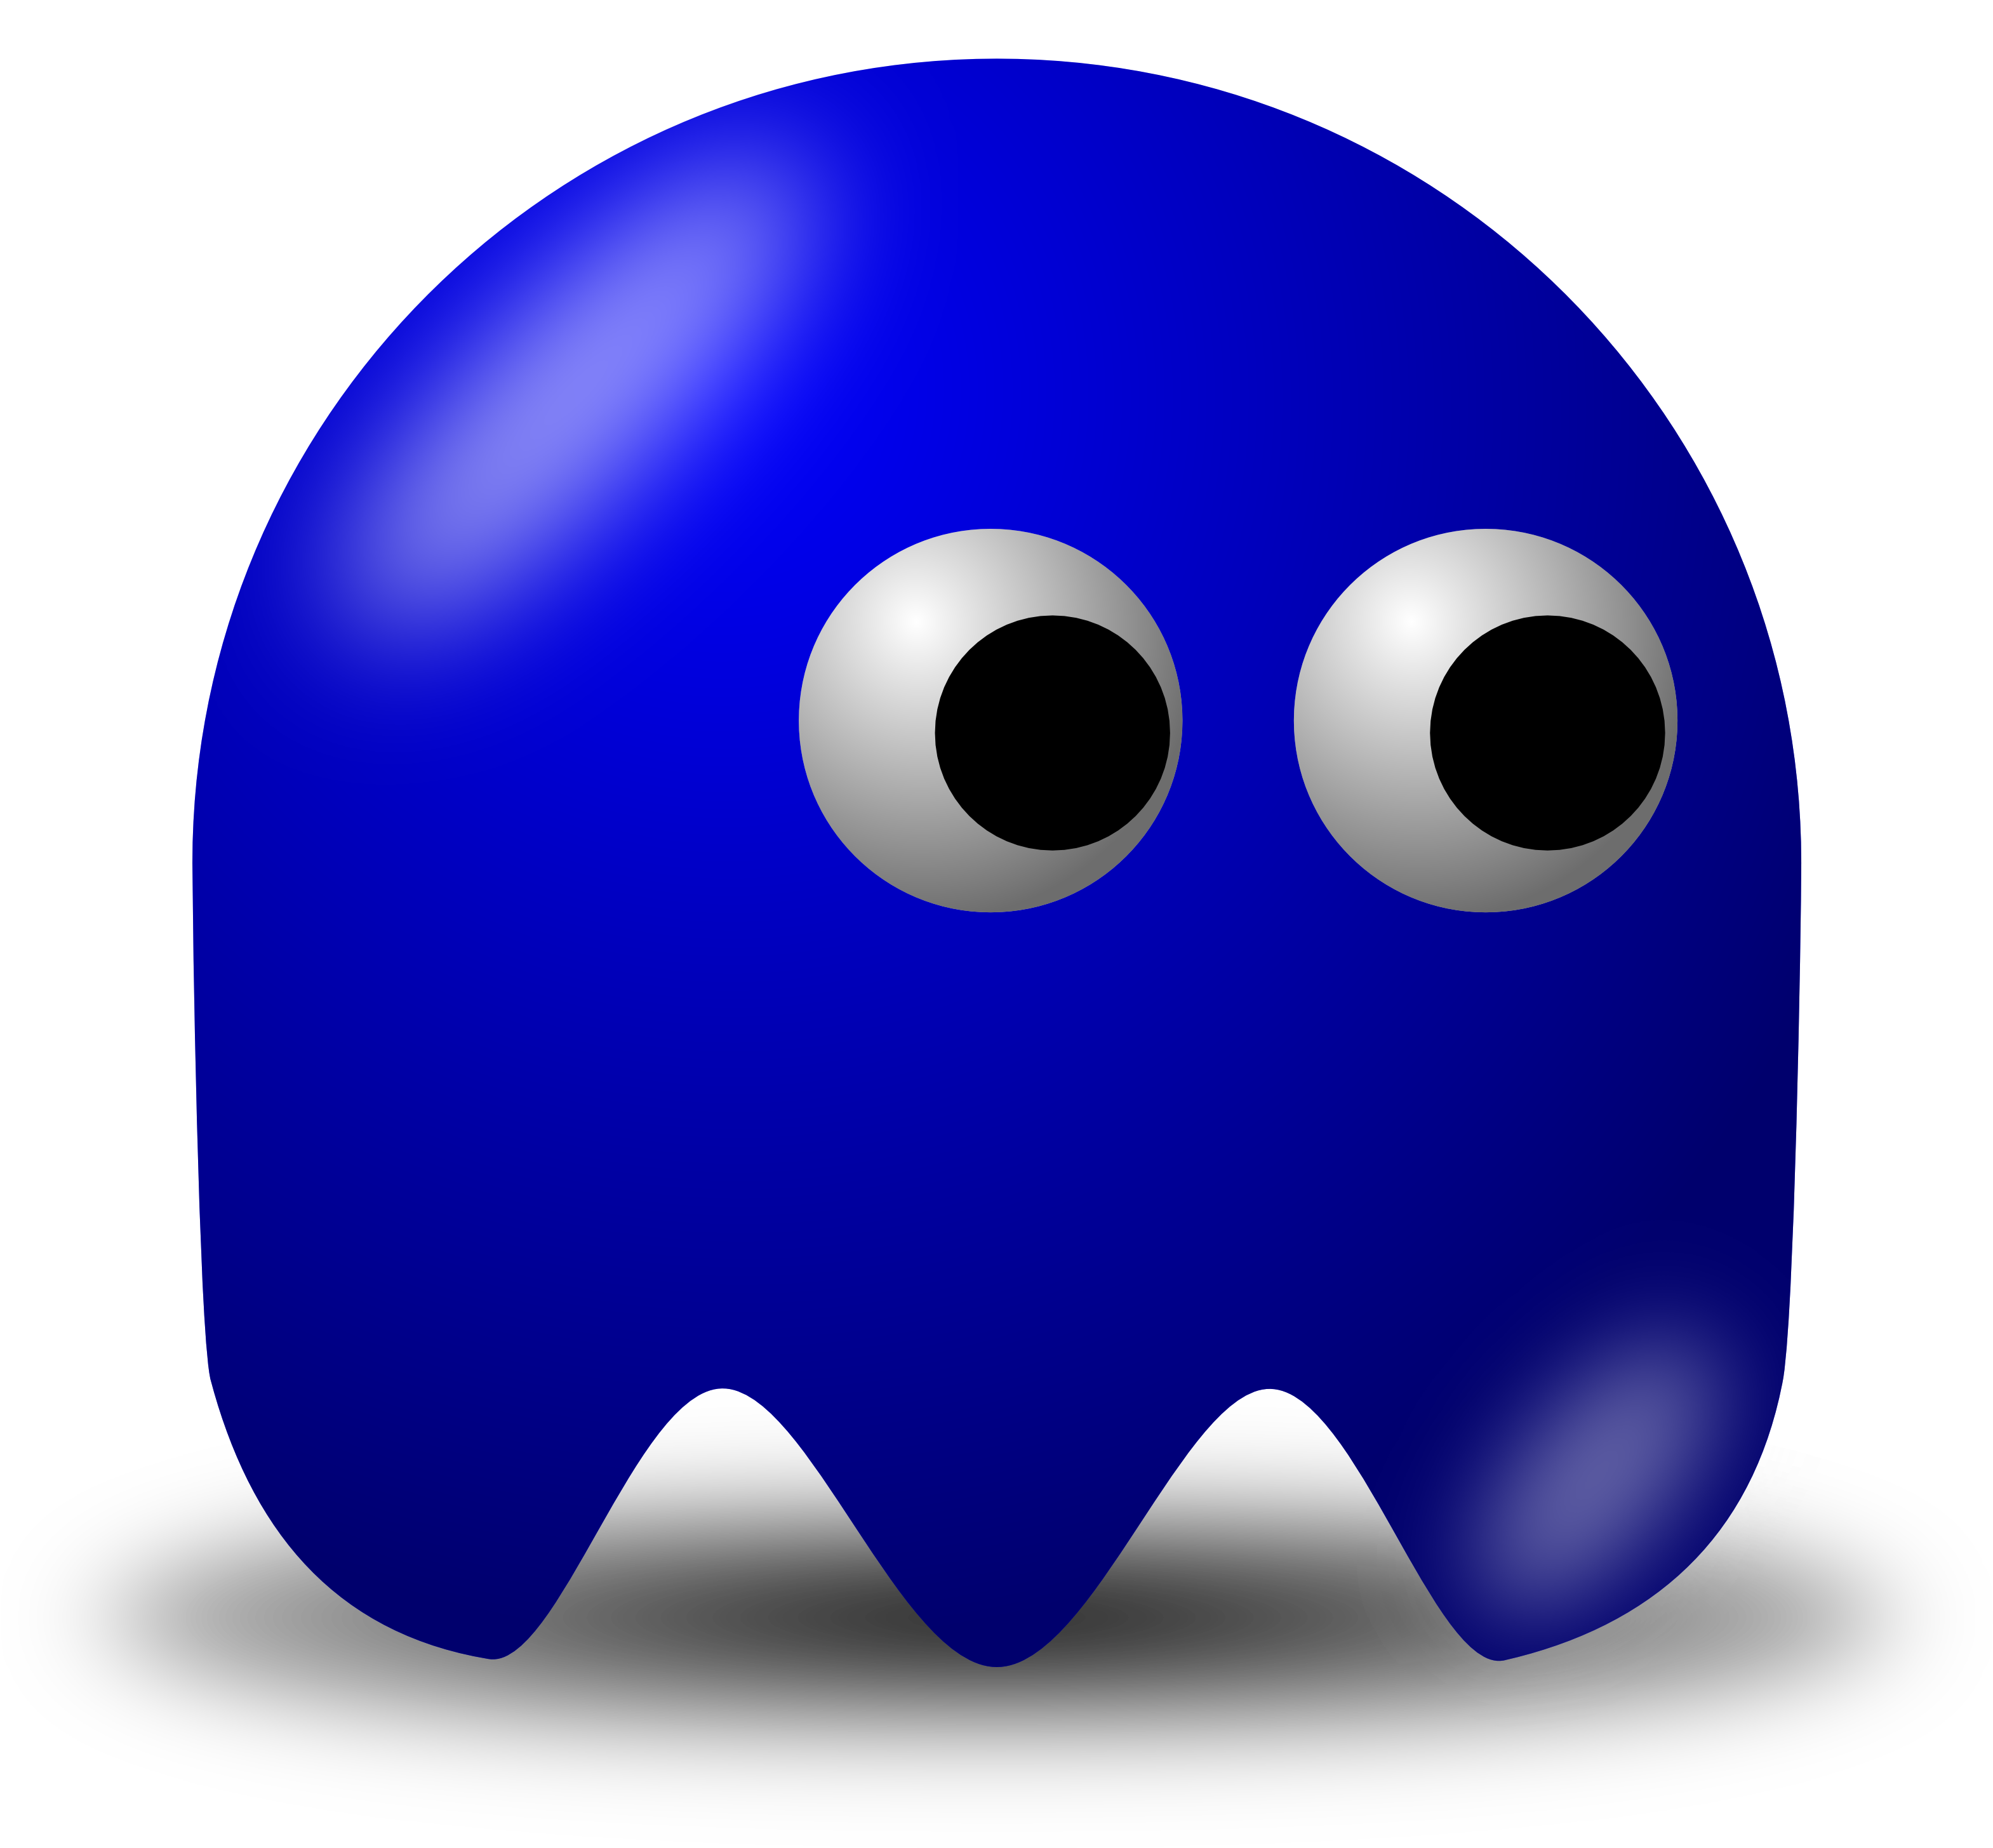 Dark Blue Pacman Ghost (3200x2953)